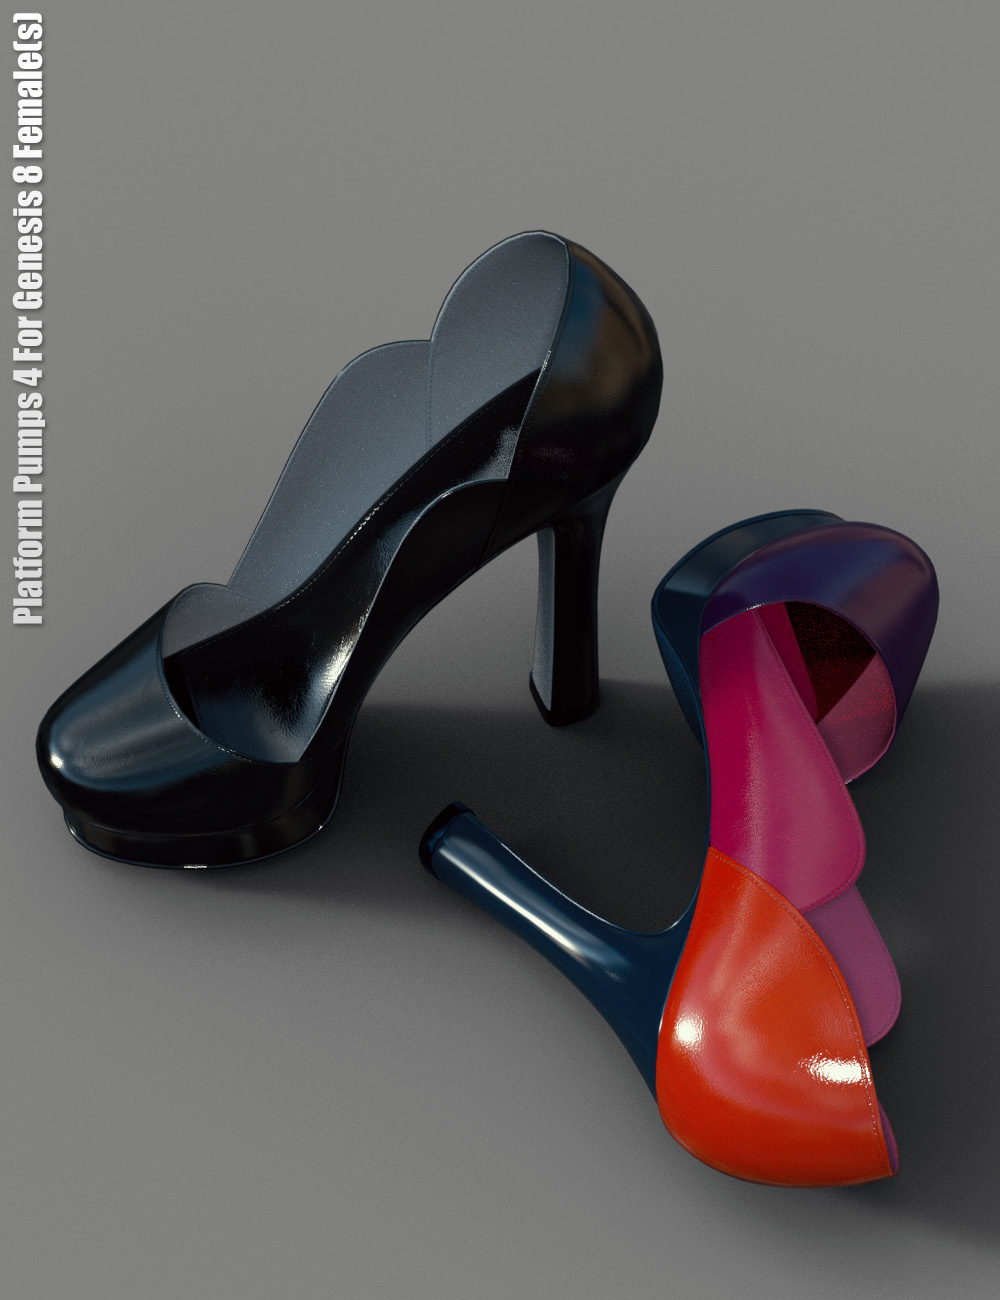 Platform Pumps 4 For Genesis 8 Female(s) by: dx30, 3D Models by Daz 3D